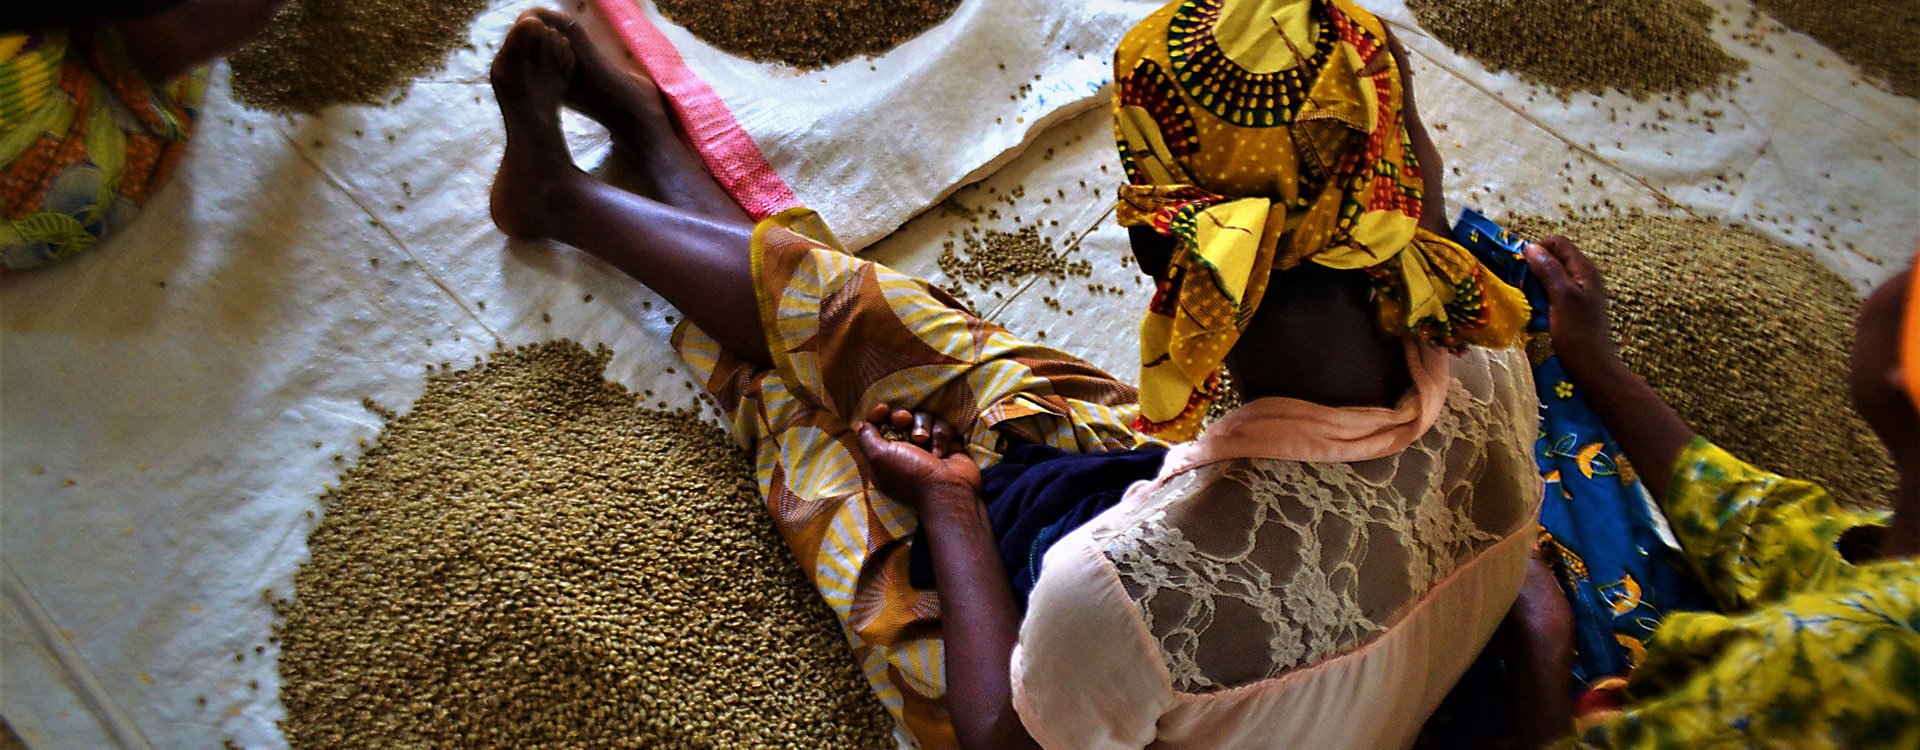 women picking beans, Rwanda